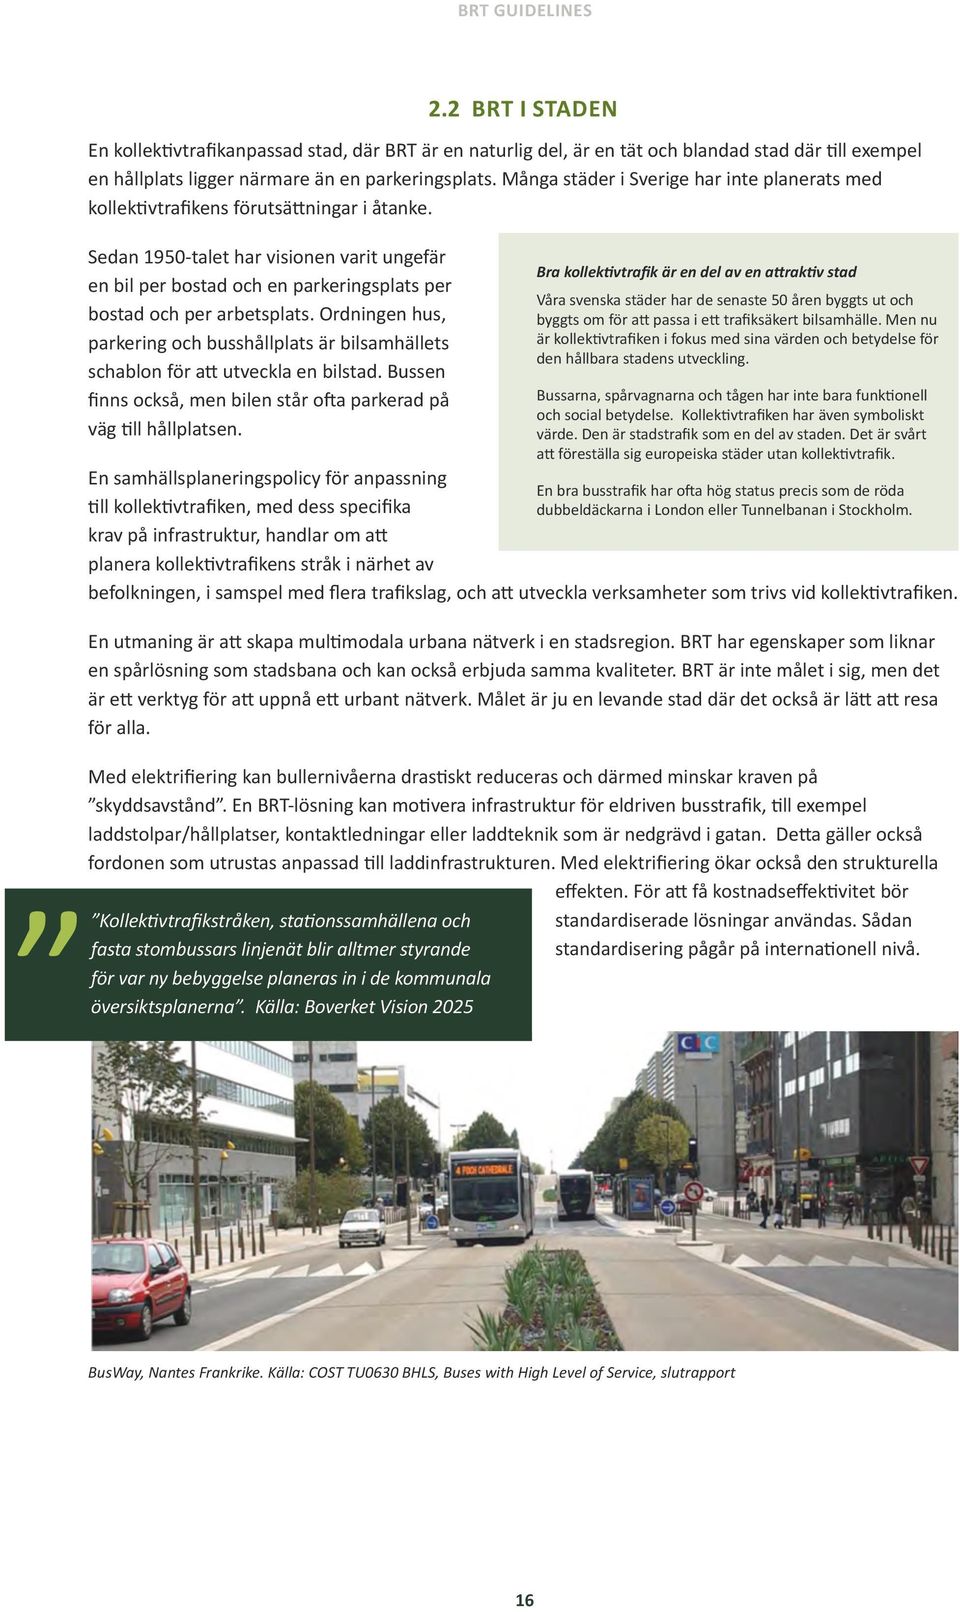 Många städer i Sverige har inte planerats med kollektivtrafikens förutsättningar i åtanke.